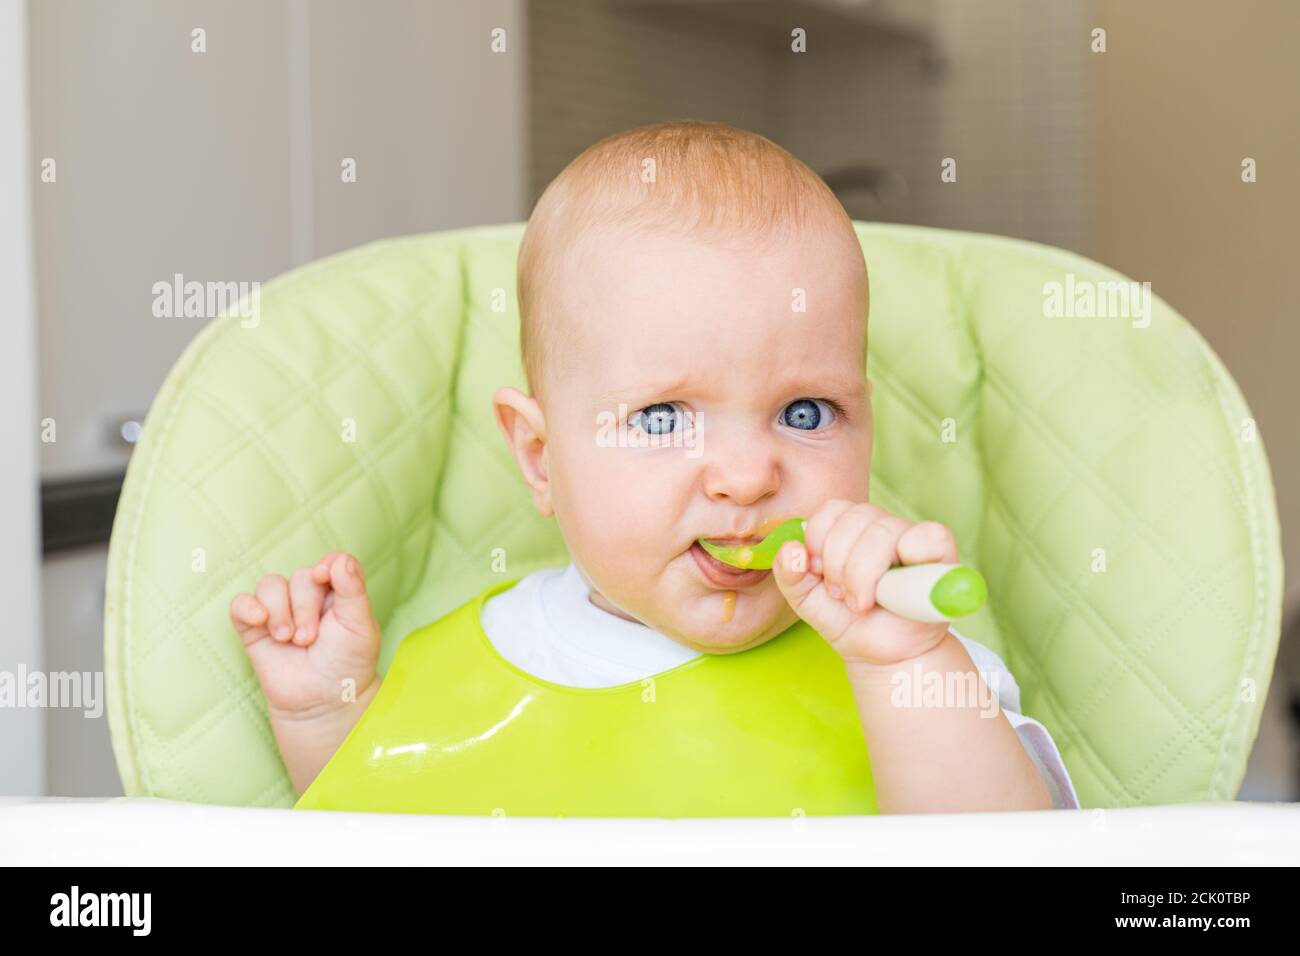 Ein kleines Kind mit blauen Augen und blonden Haaren sitzt in einem Hochstuhl und isst den ersten Köder. Gesunde Ernährung. Baby 6 Monate. Stockfoto